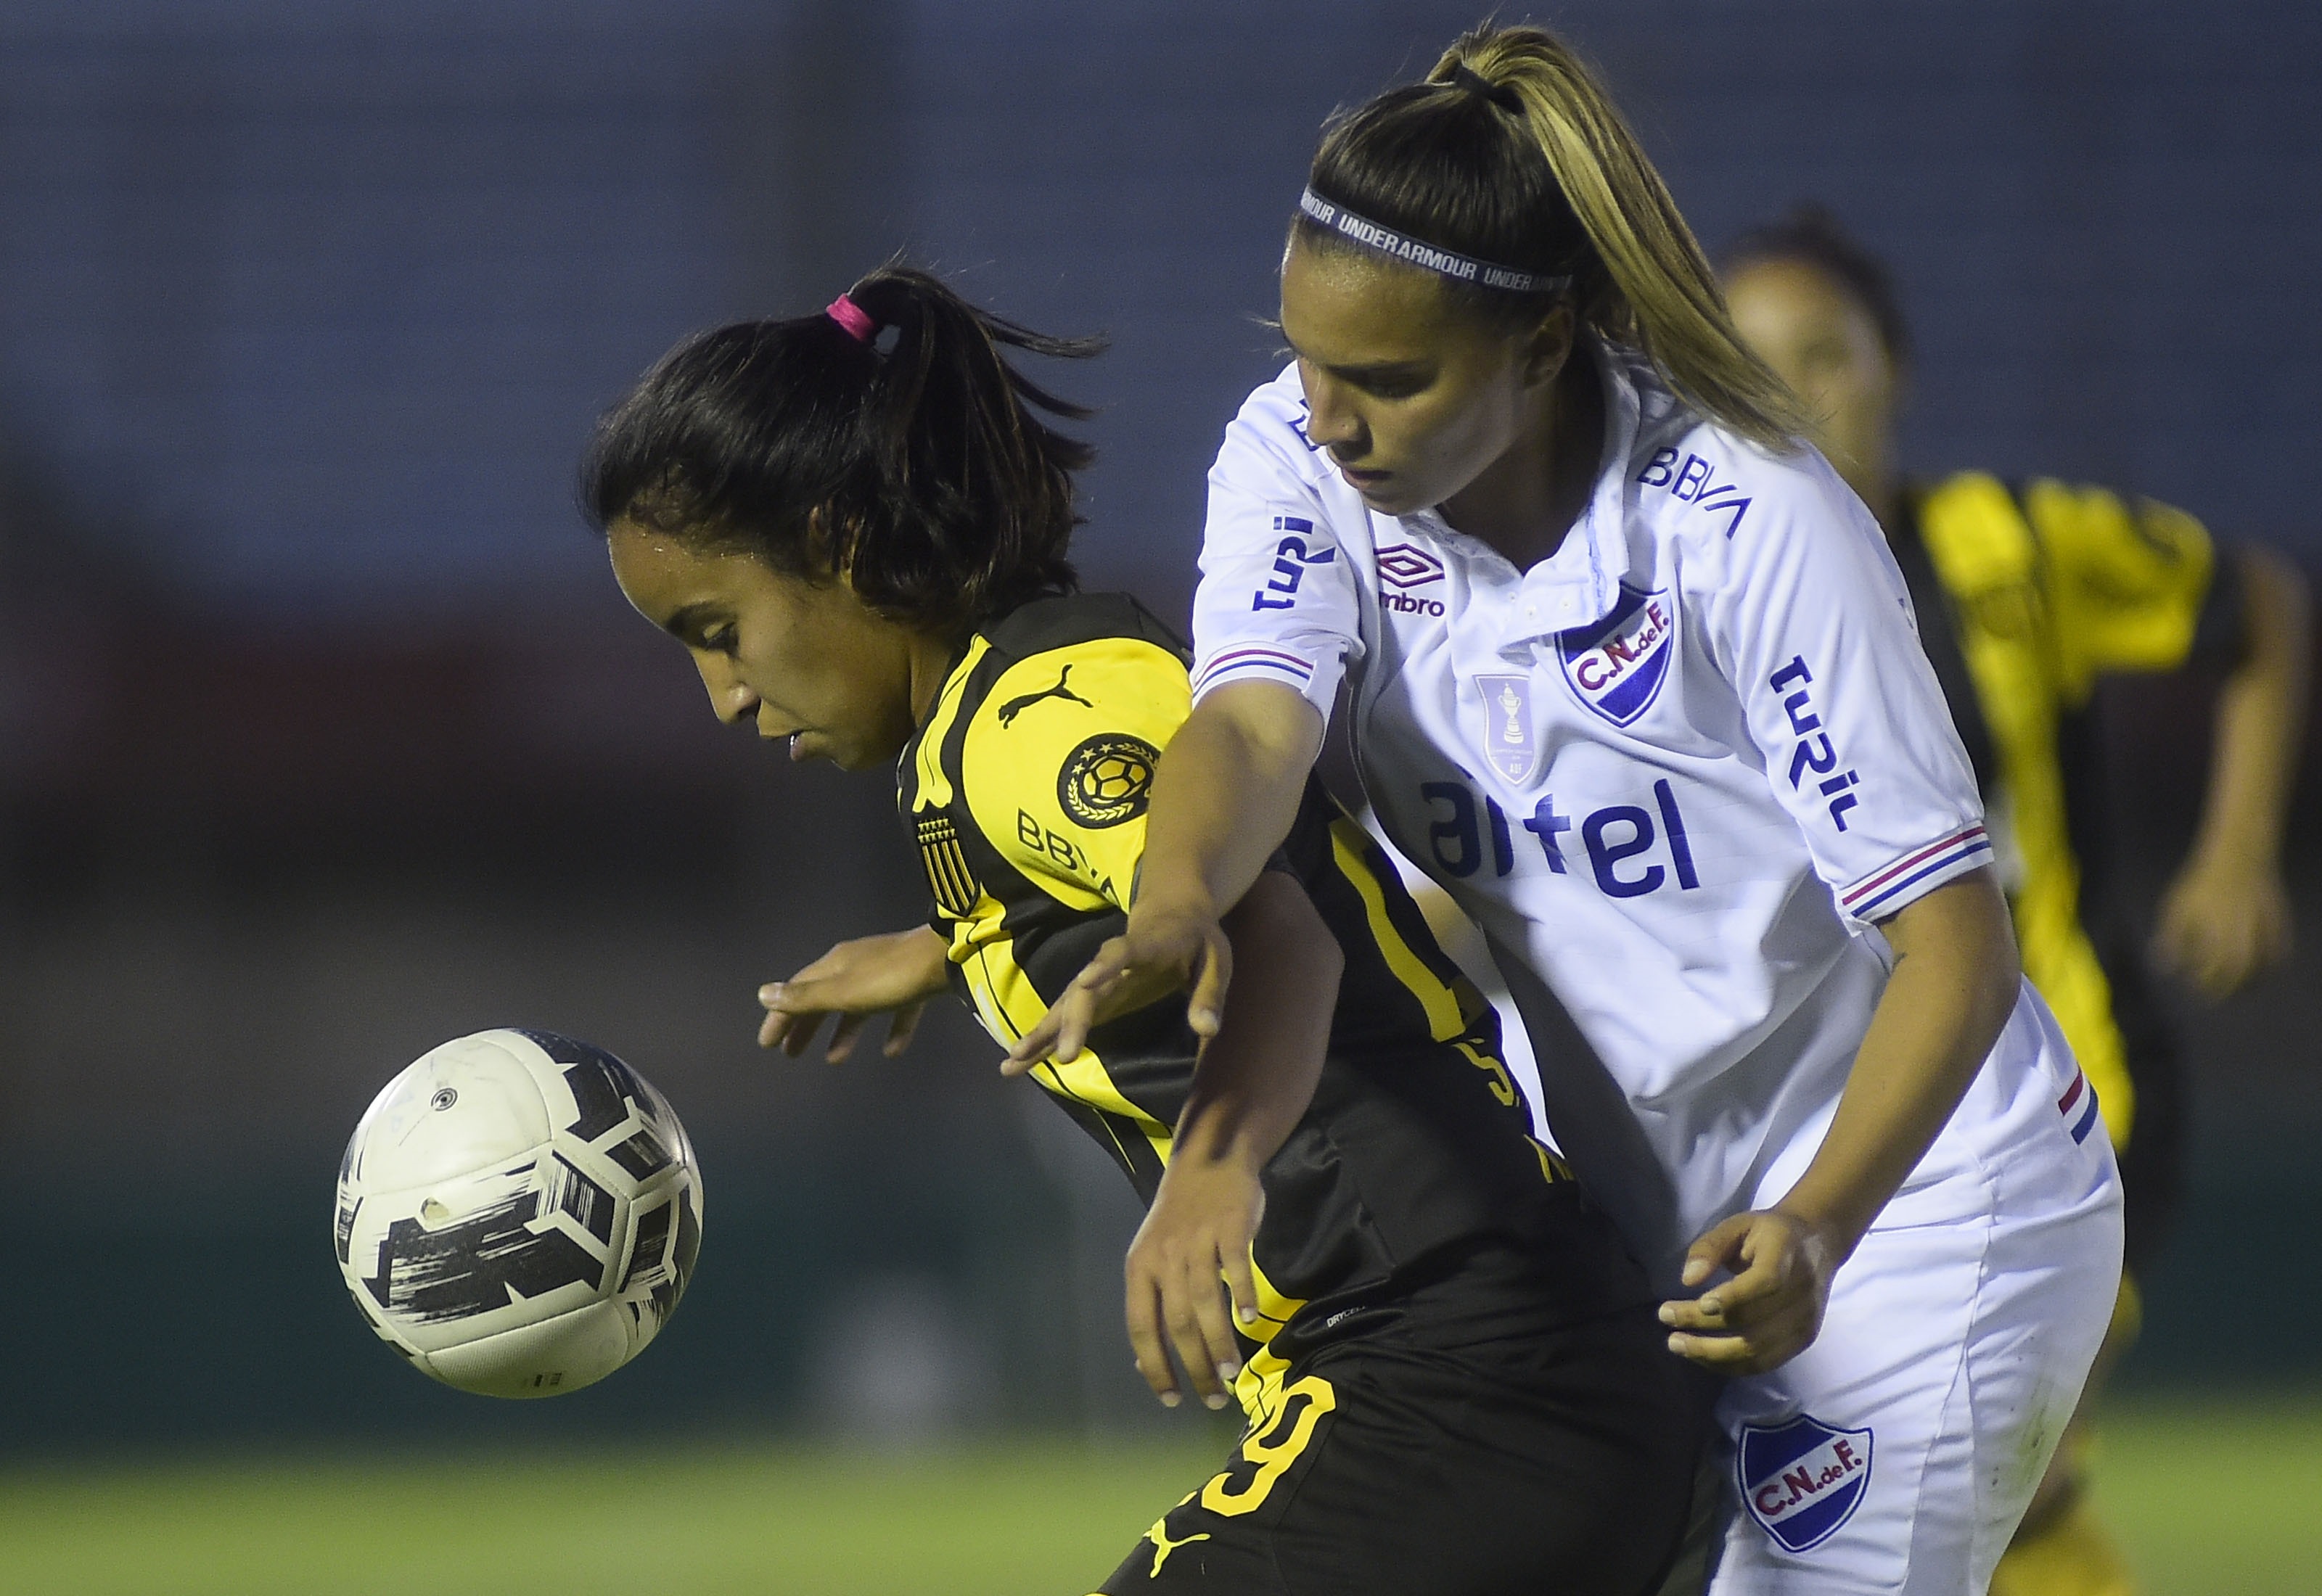 Este domingo, a las 11.00 h, - Futbol Femenino en Uruguay